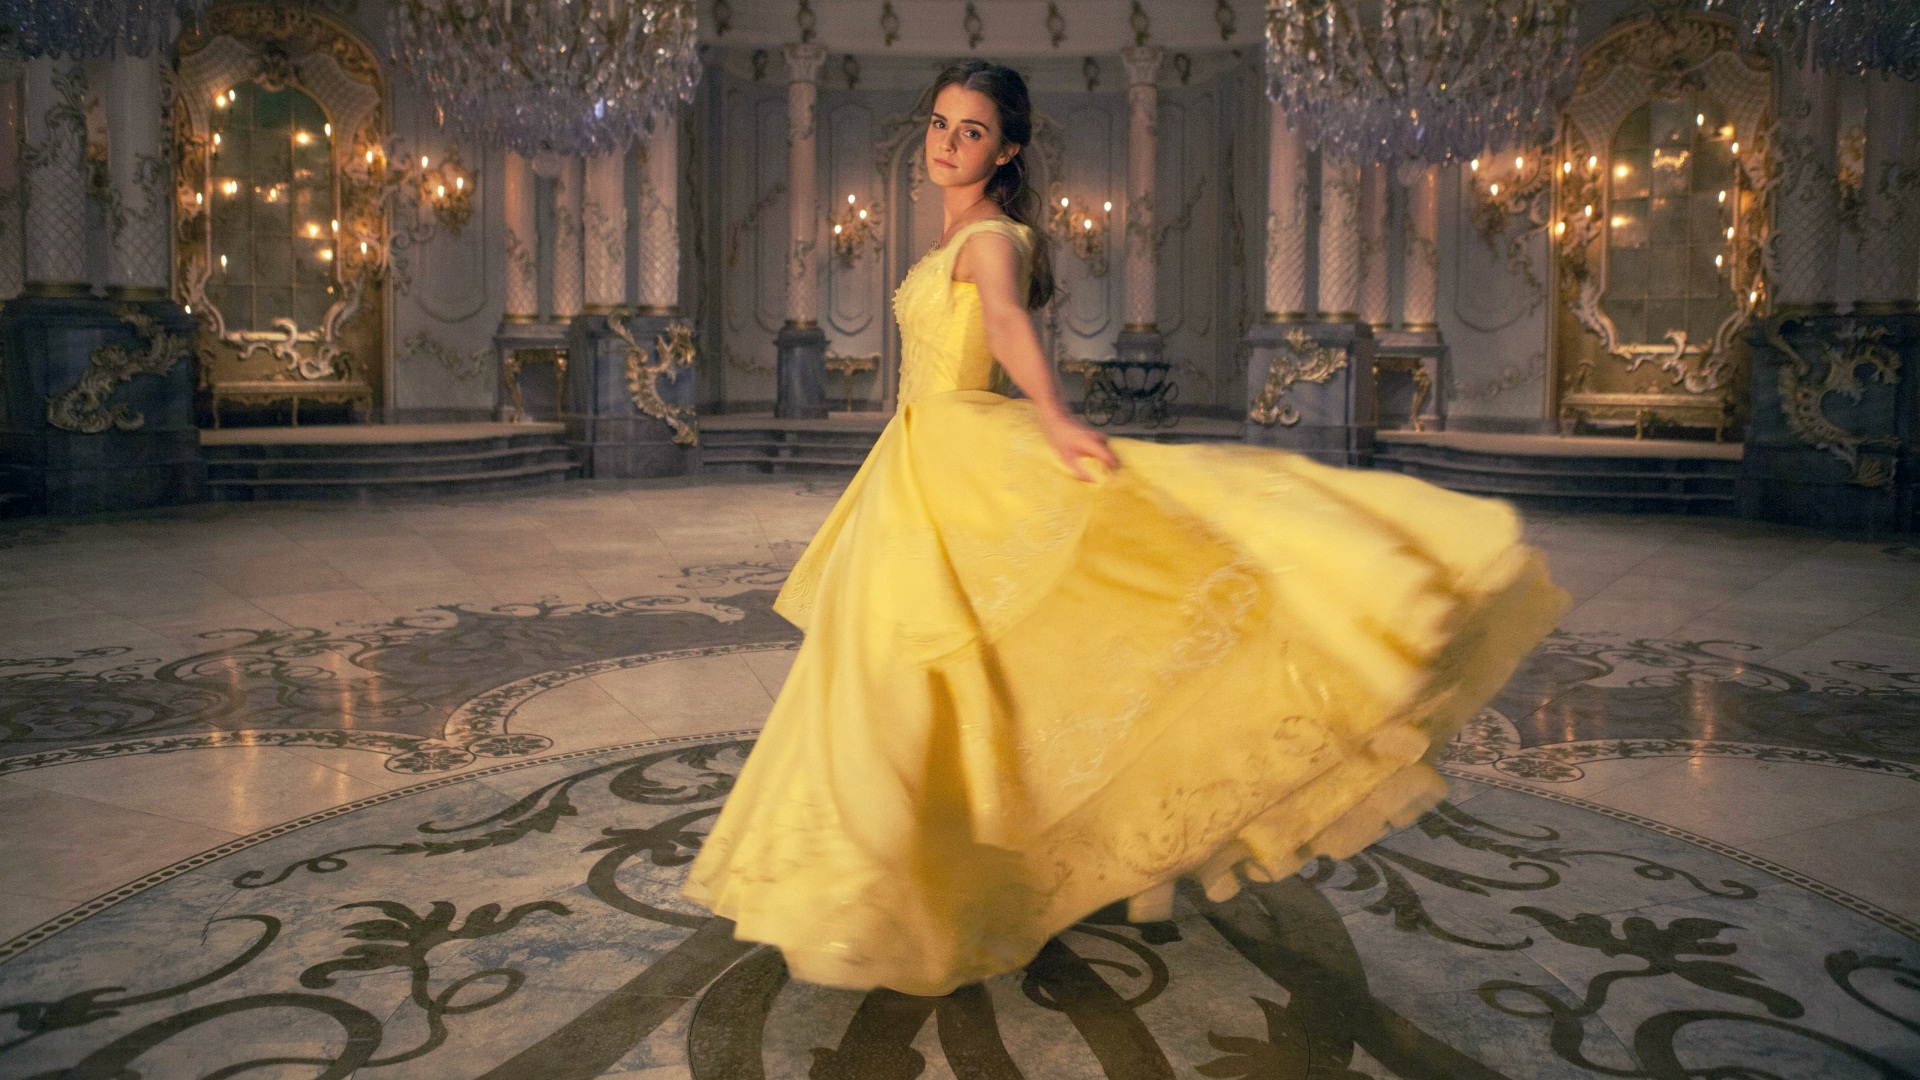 Emma Watson Beauty And The Beast Yellow Dress Wallpaper - Beauty And The Beast Wallpaper 2017 - HD Wallpaper 